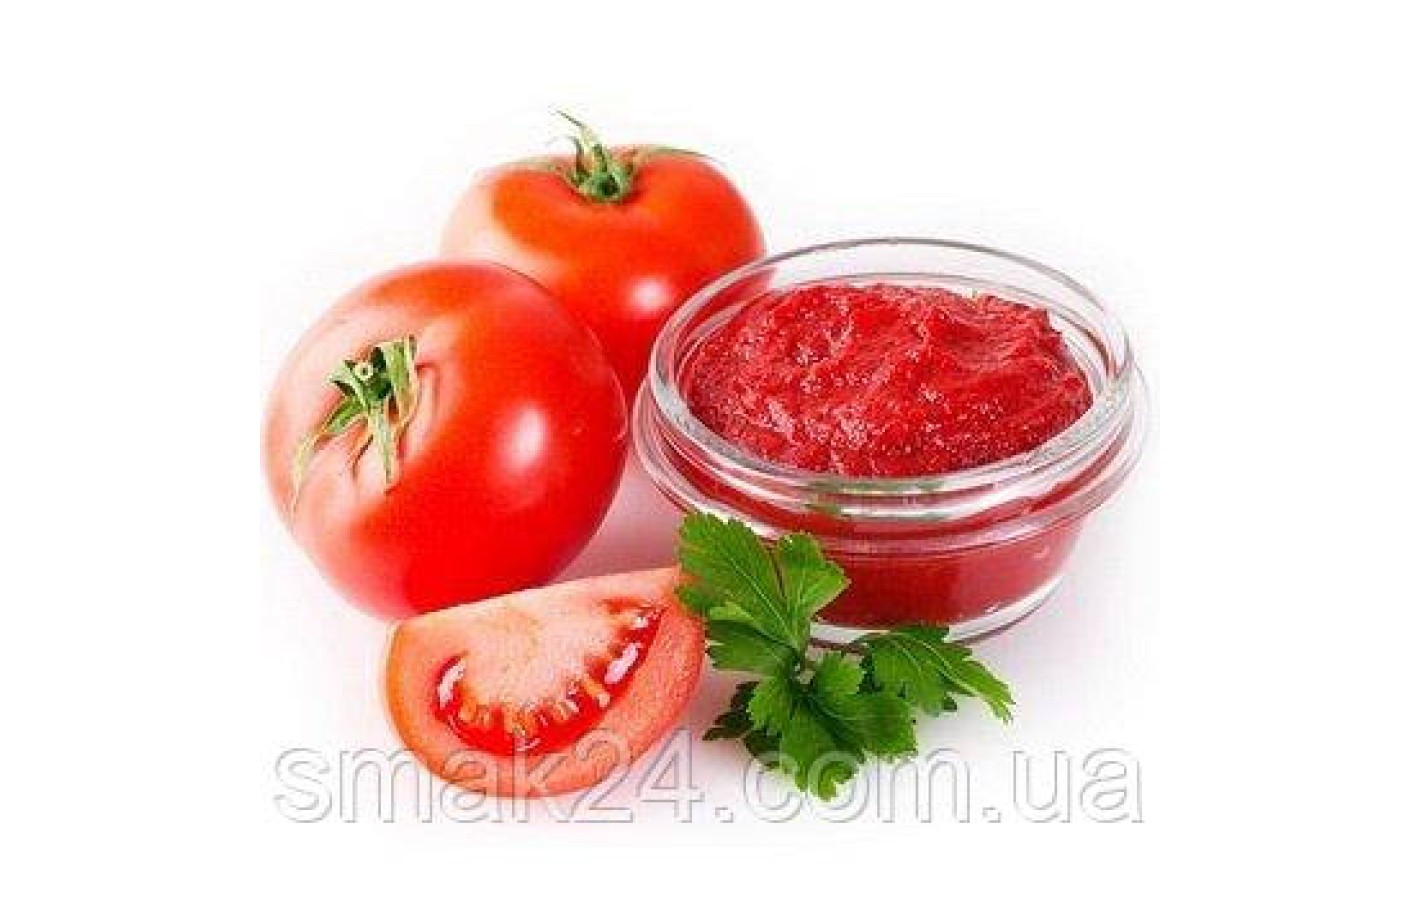 Паста томатная С бабушкиной грядки с/б, 300г